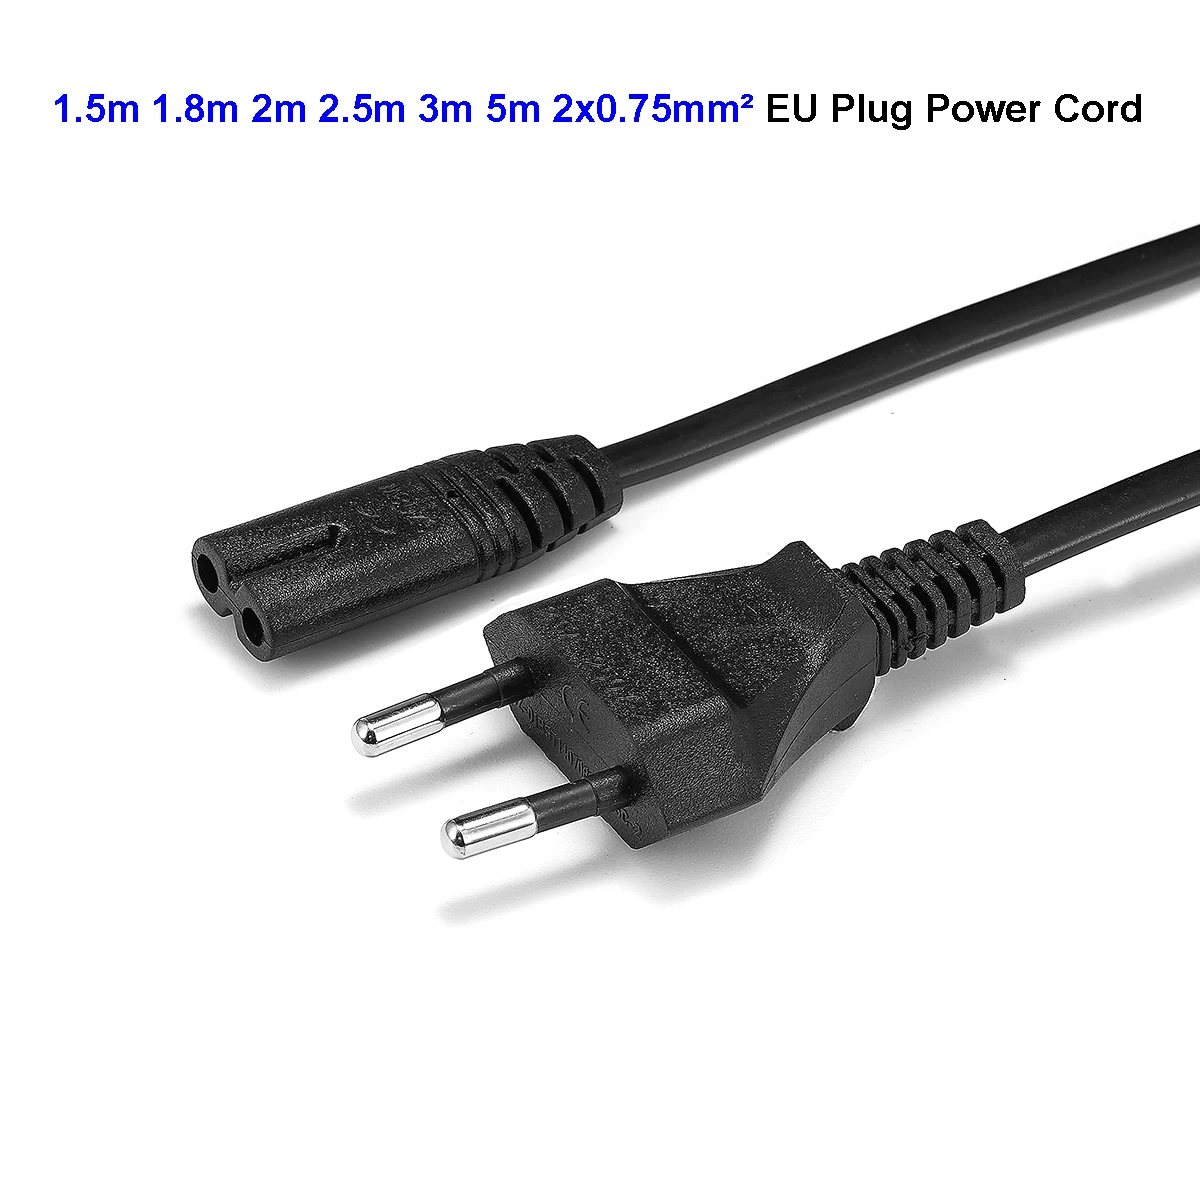 2 шт. ТВ Мощность кабель 1,5 m 2m 3M USB кабель с Schuko EU штепсельная вилка европейского стандарта IEC C13 Питание шнур для ПК монитора компьютера принтера Epson LG Проектор